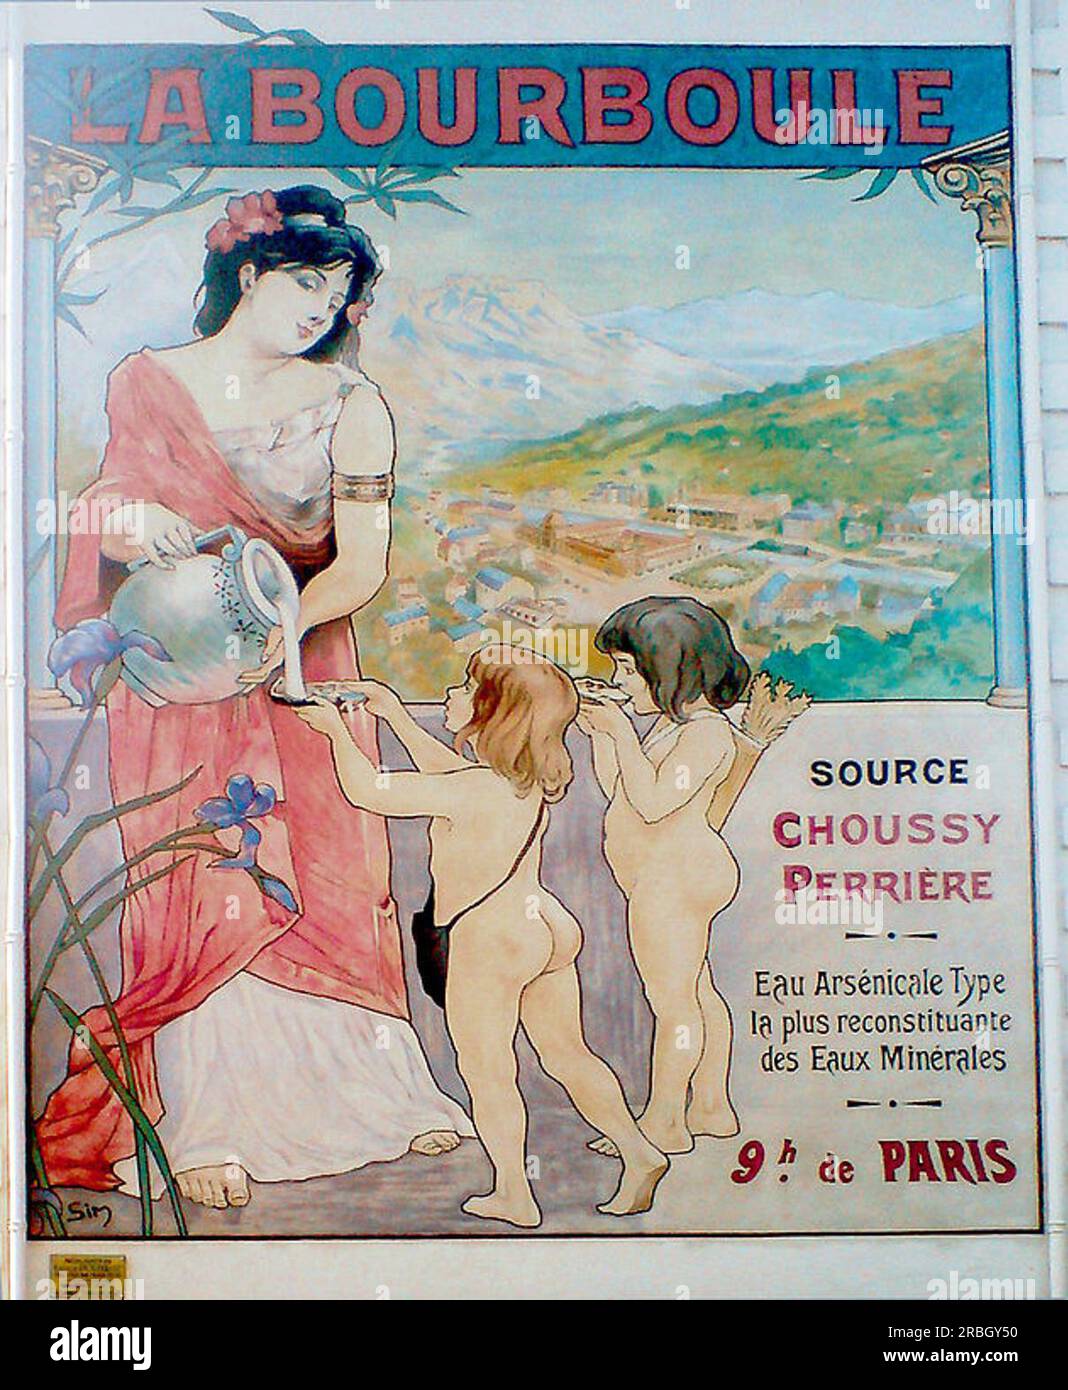 Affiche La Bourboule by Michel Simonidy Stock Photo